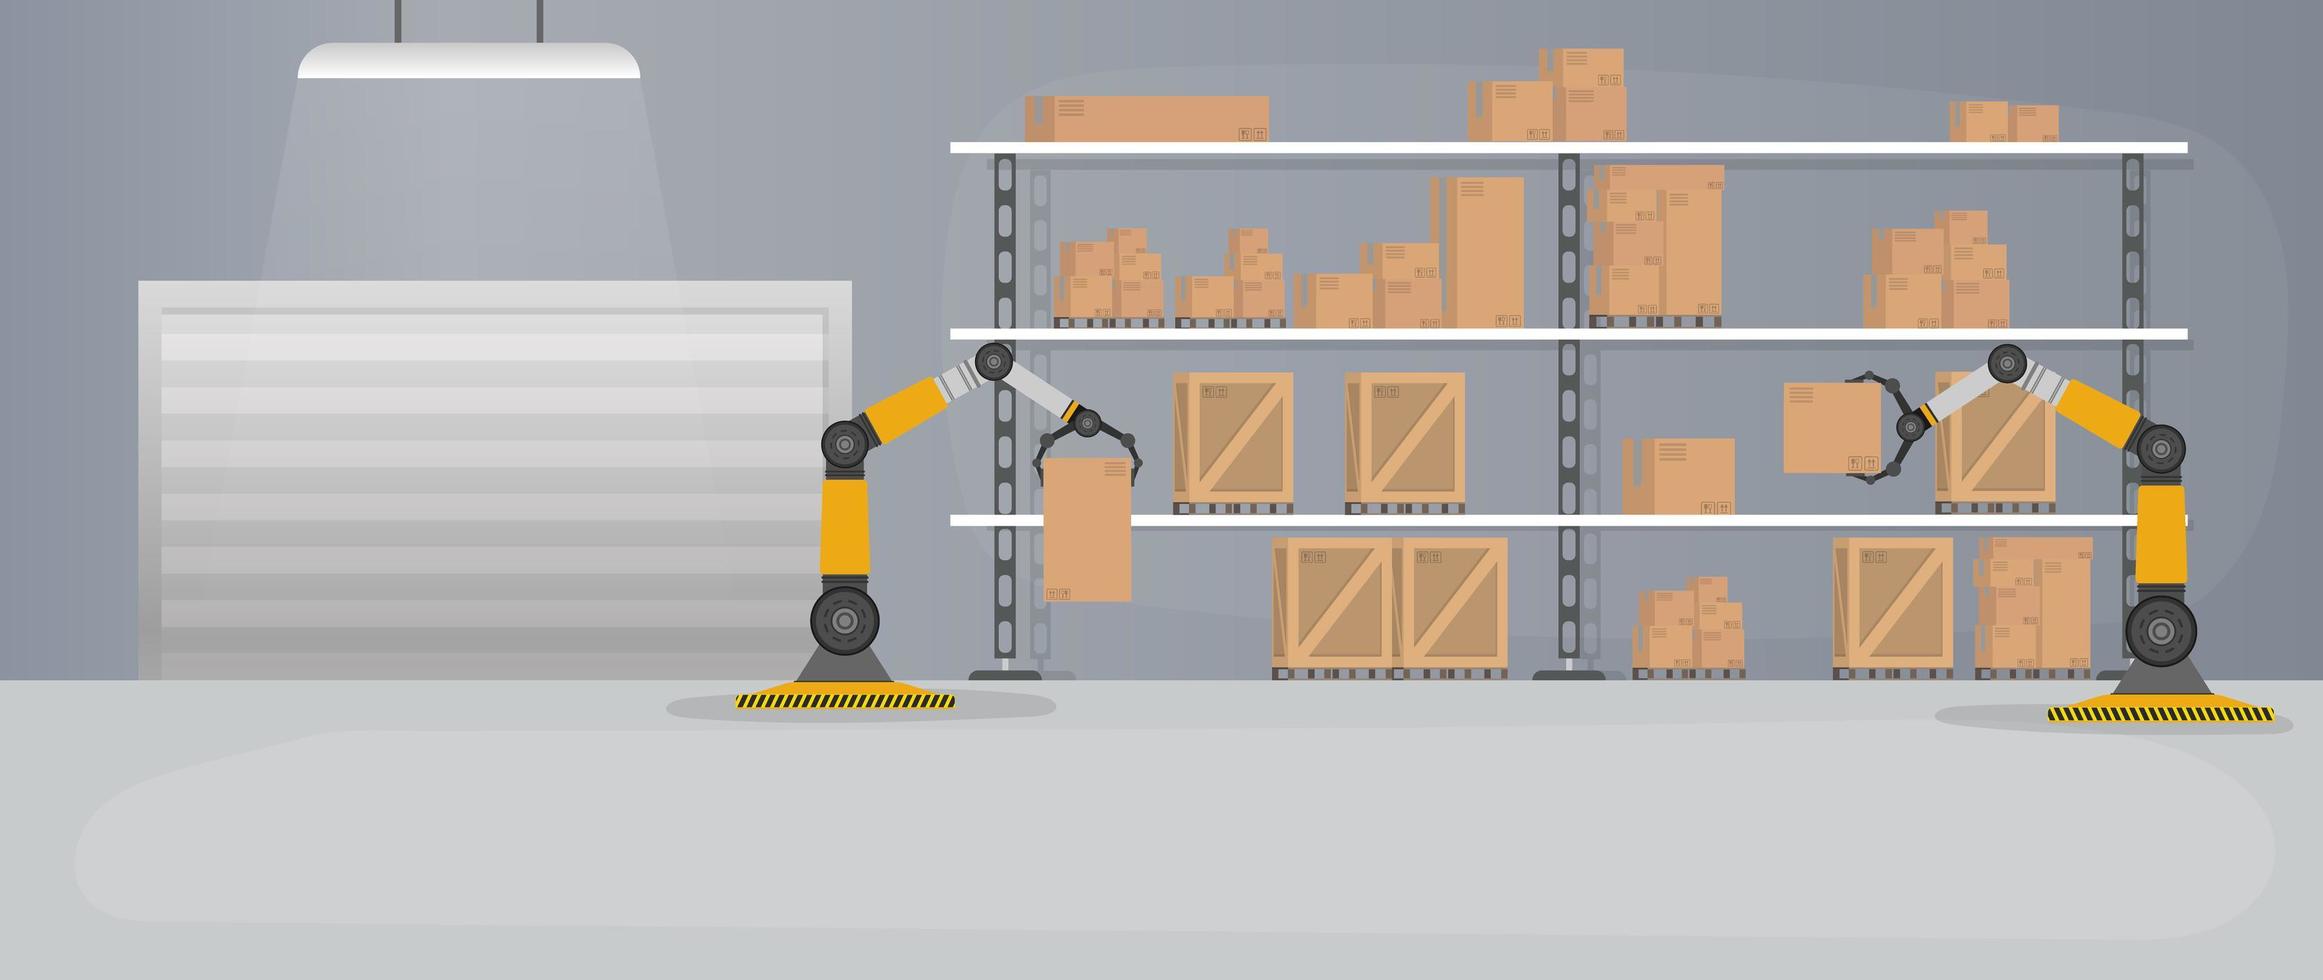 productie magazijn met dozen en pallets. robotarm werkt in een magazijn. robotarm tilt dozen op. vector